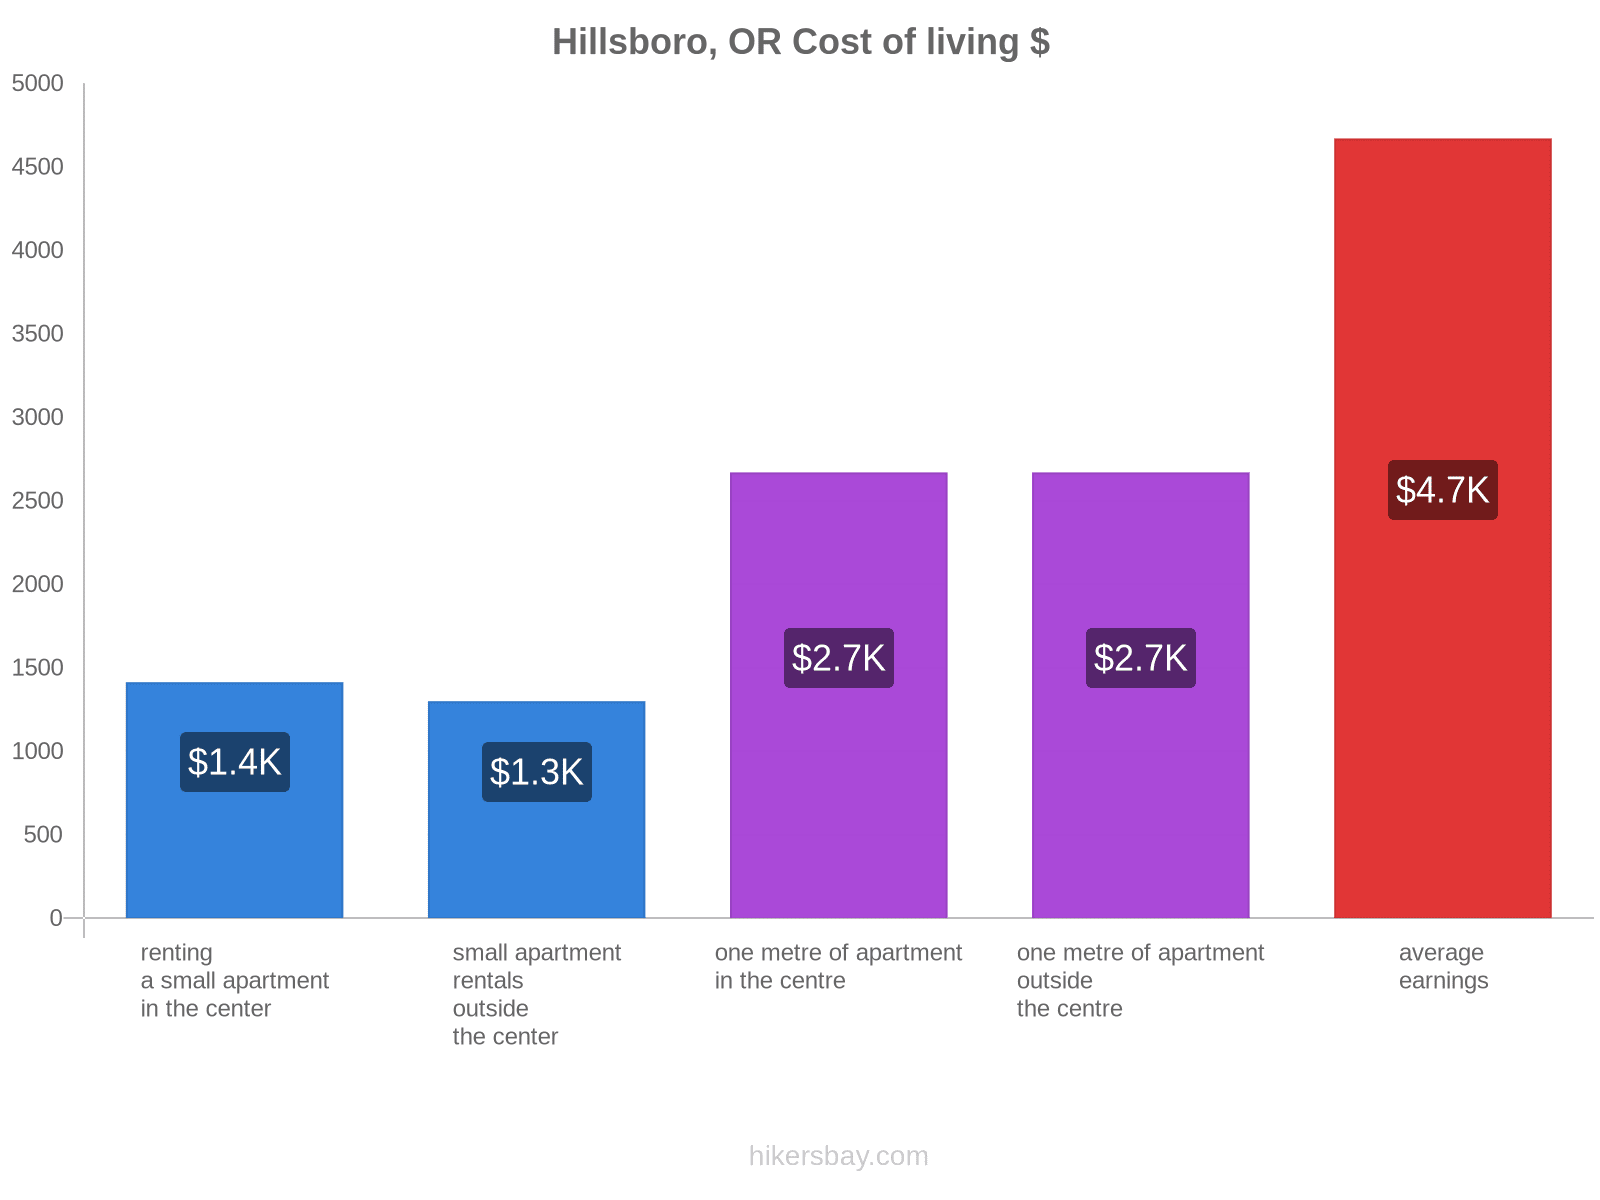 Hillsboro, OR cost of living hikersbay.com